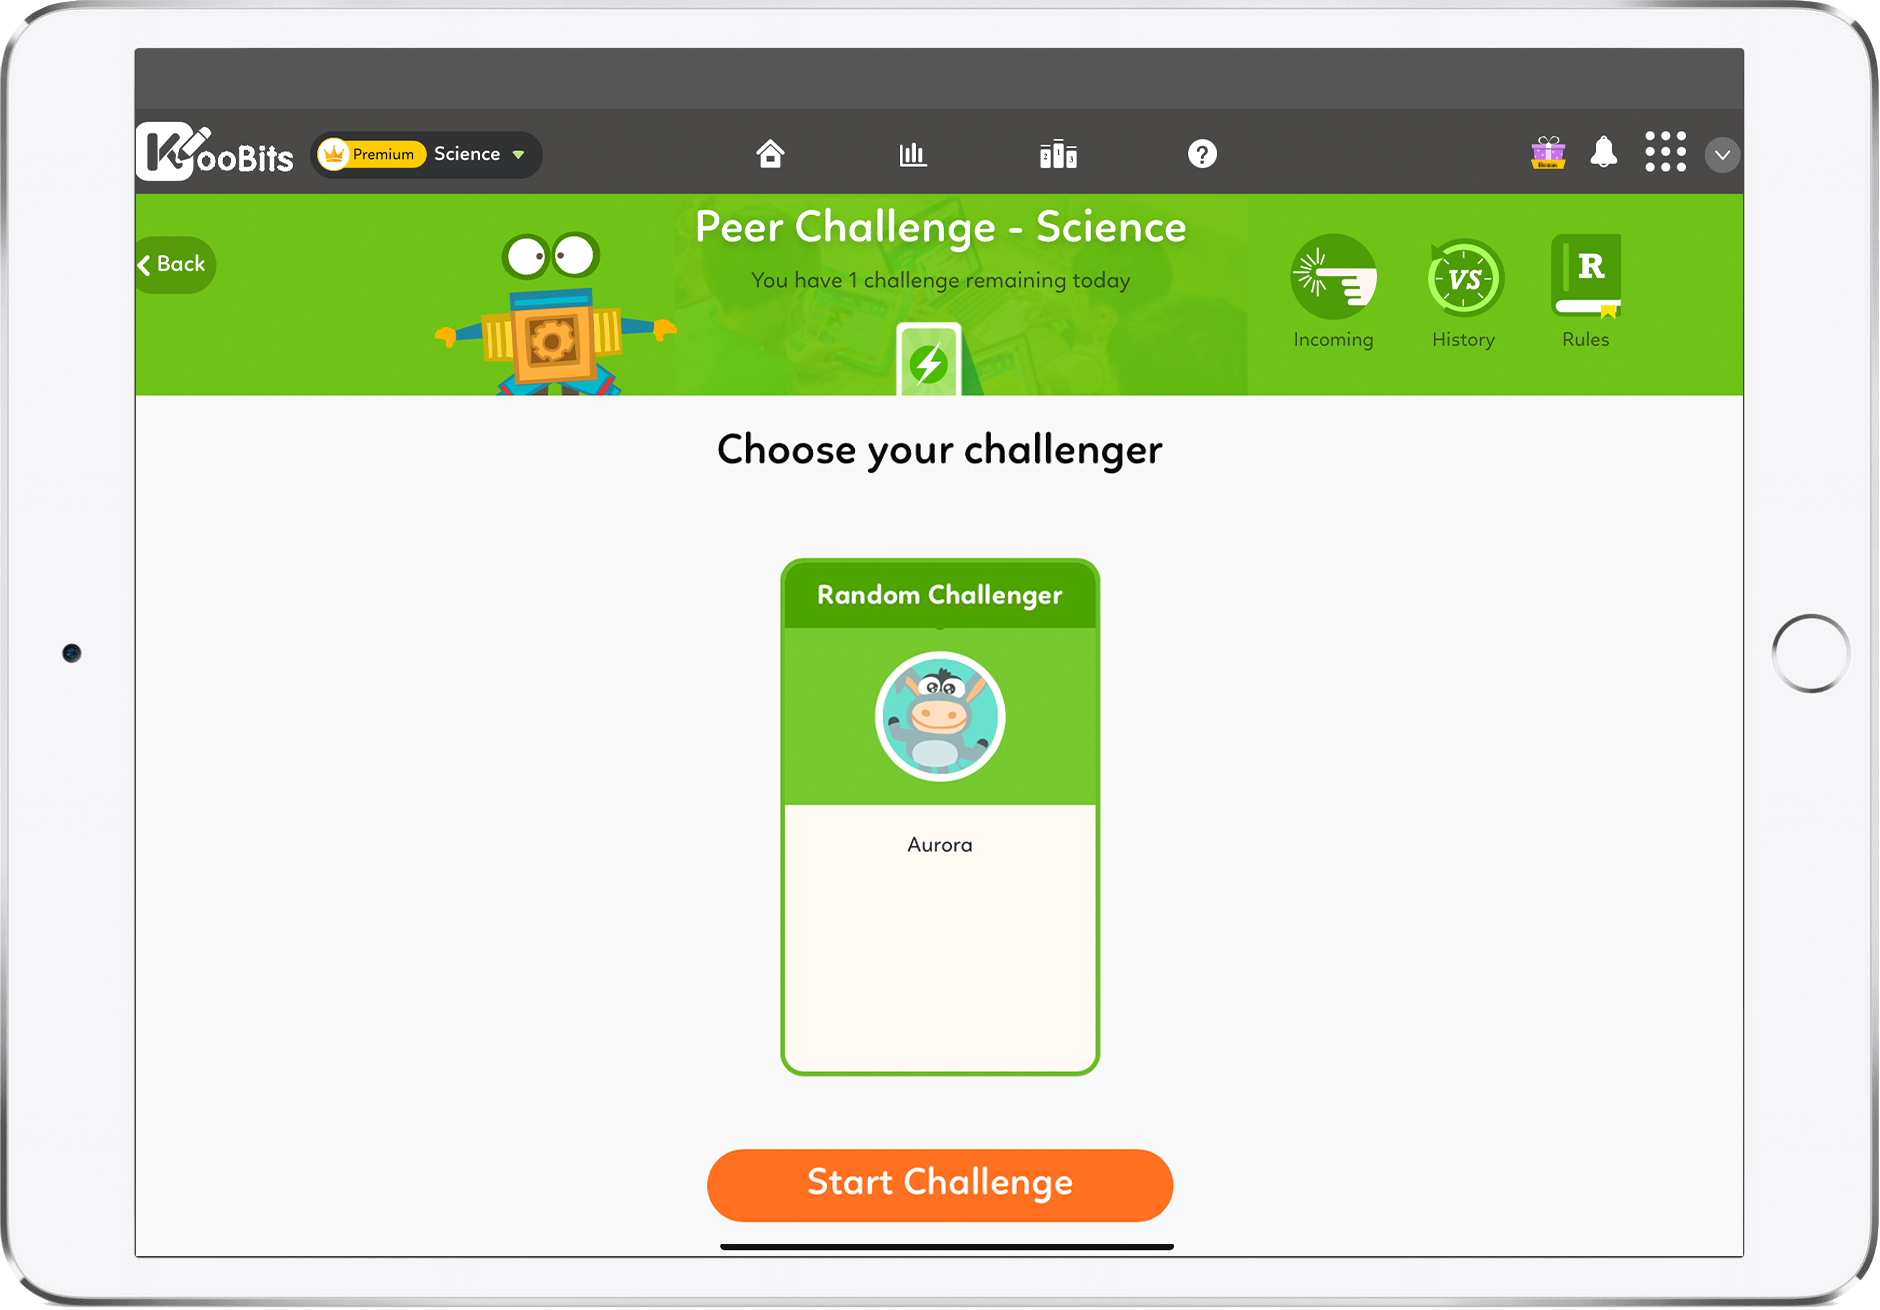 Science - Peer Challenge